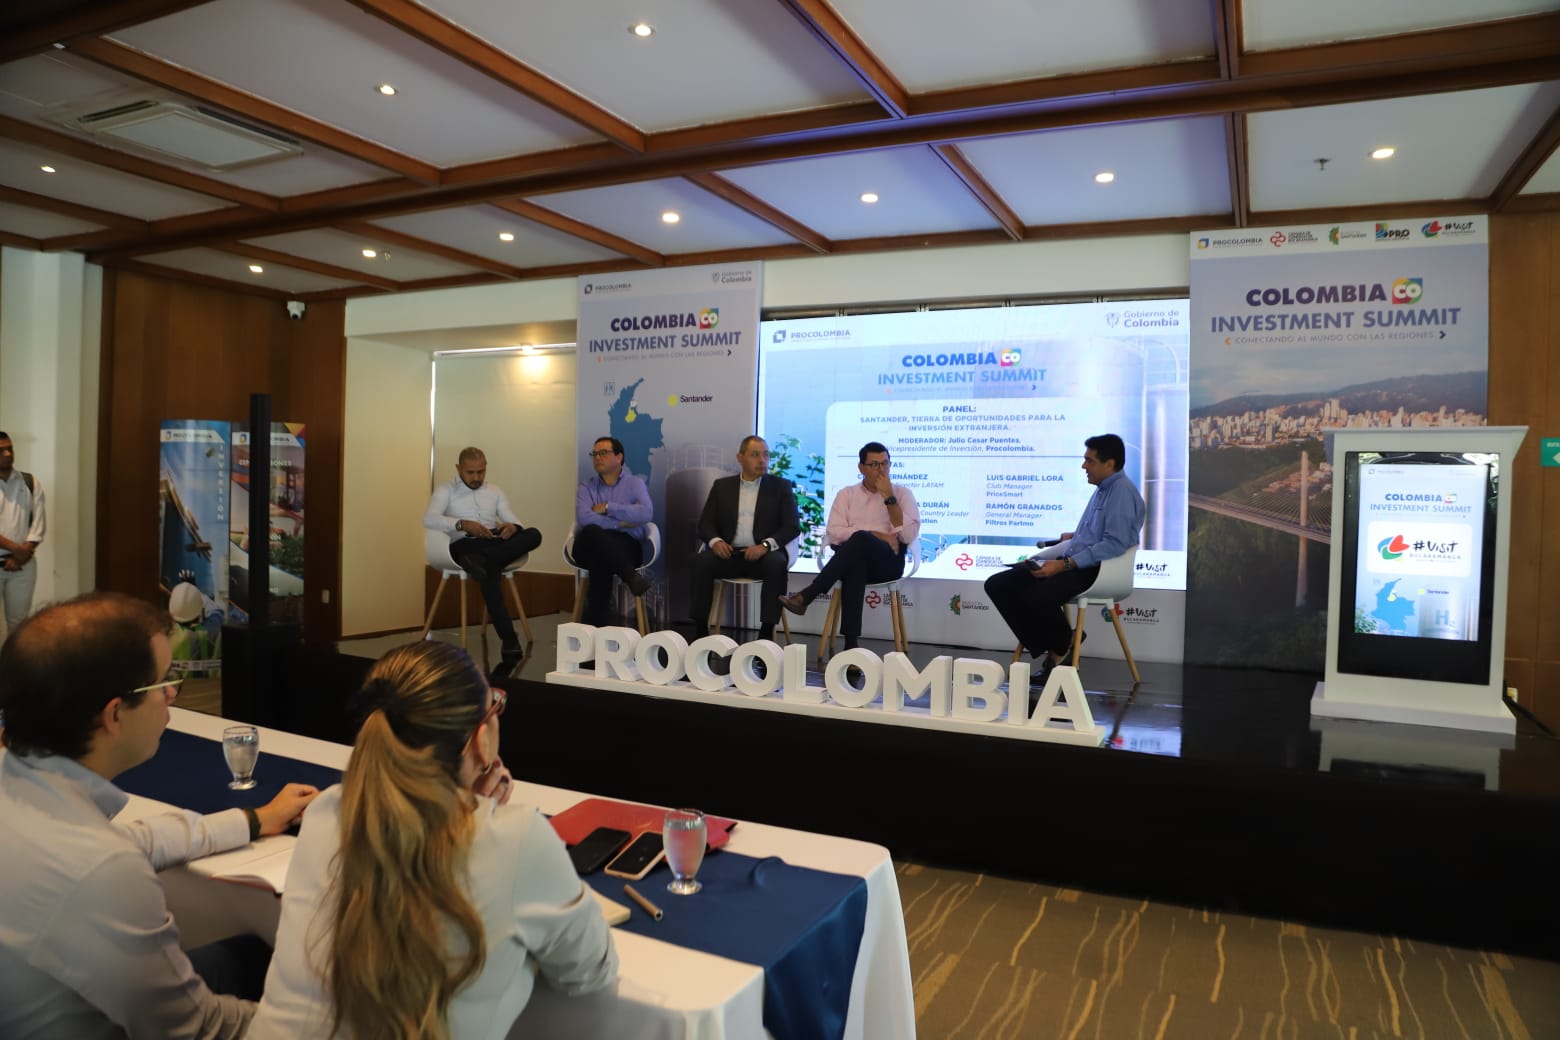         Colombia Investment Summit 2023: Un impulso para la inversión estratégica en Bucaramanga y Santander   